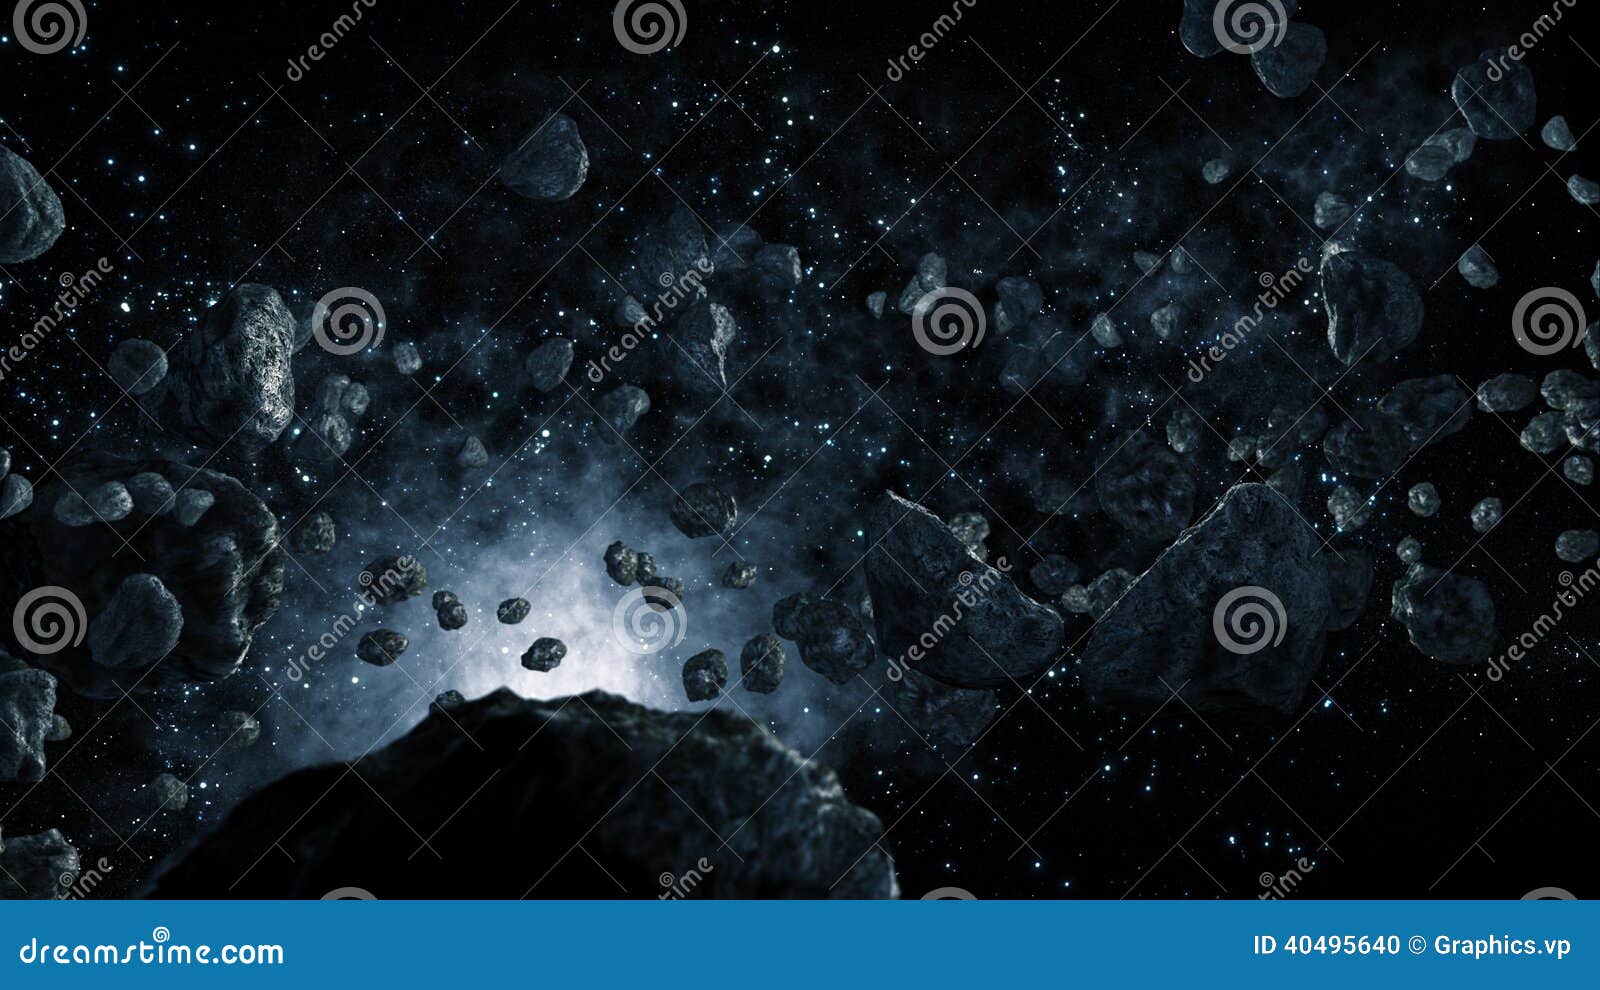 meteorites flying through space